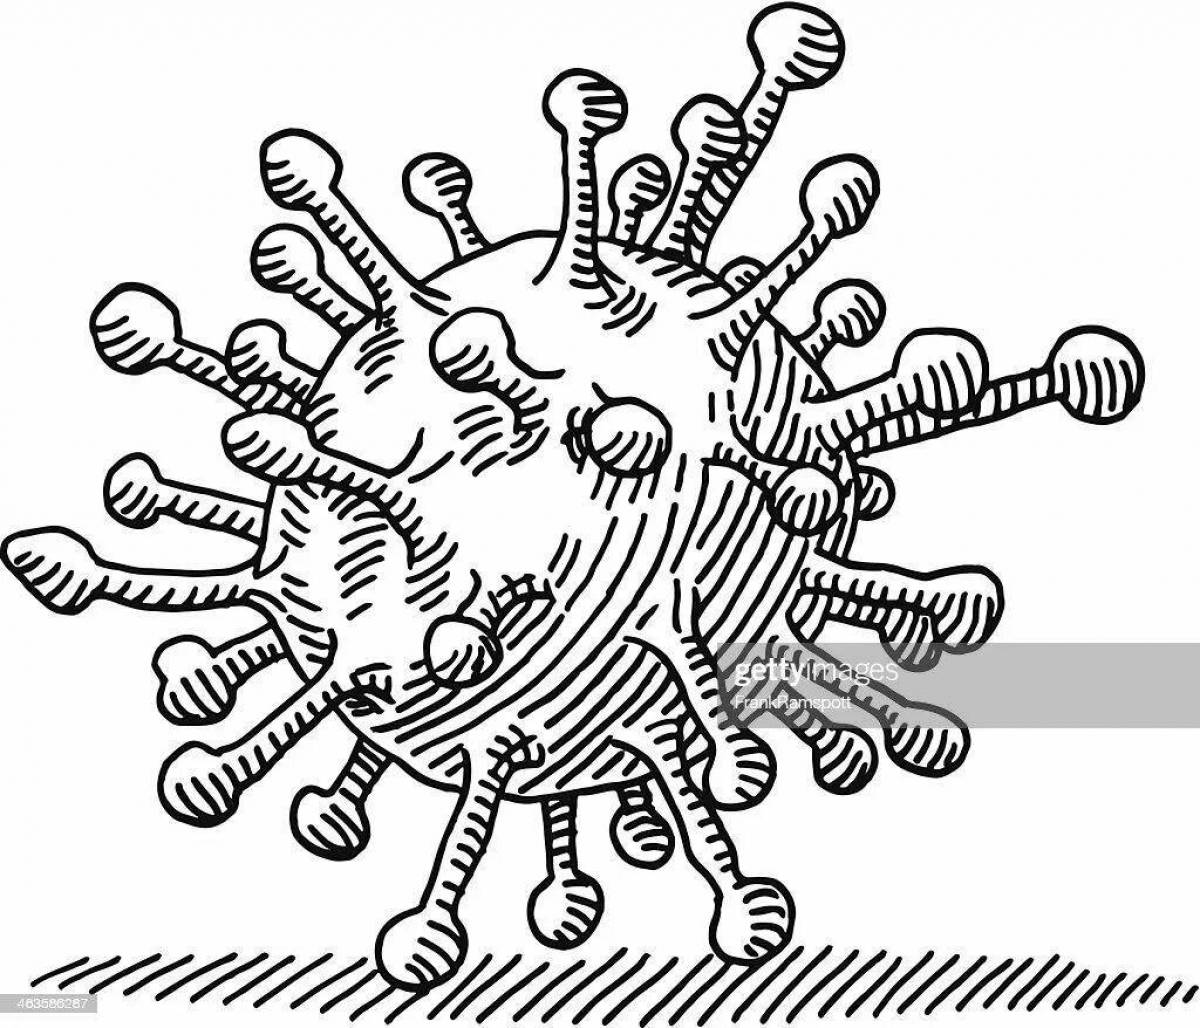 Вирус рисунок чб